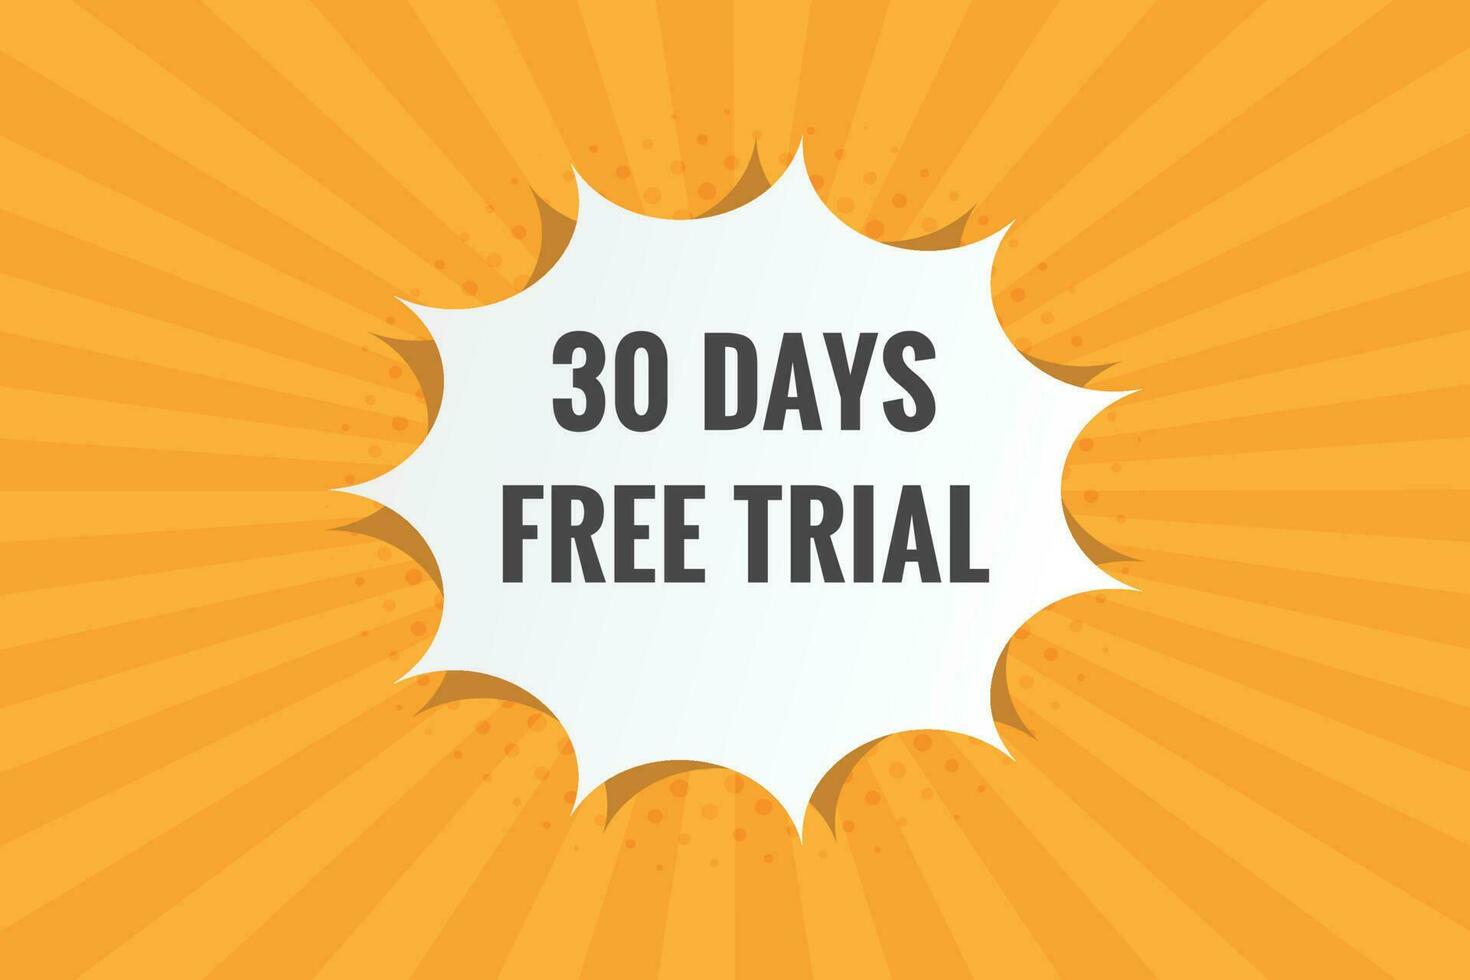 30 journées gratuit procès bannière conception. 30 journée gratuit bannière Contexte vecteur